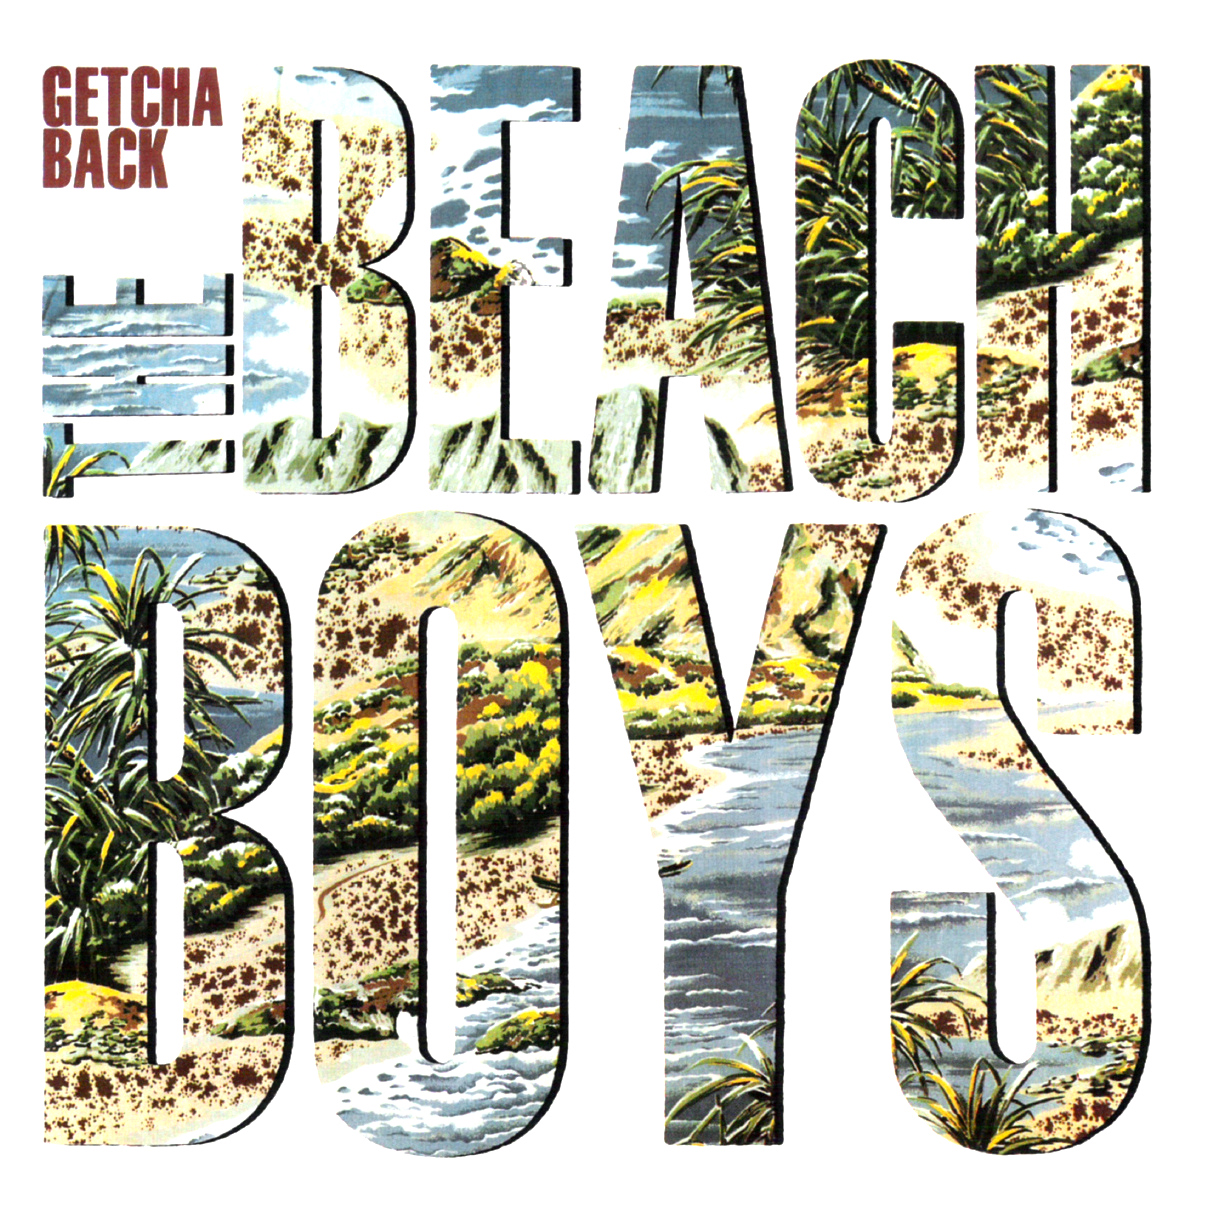 The Beach Boys — Getcha Back cover artwork